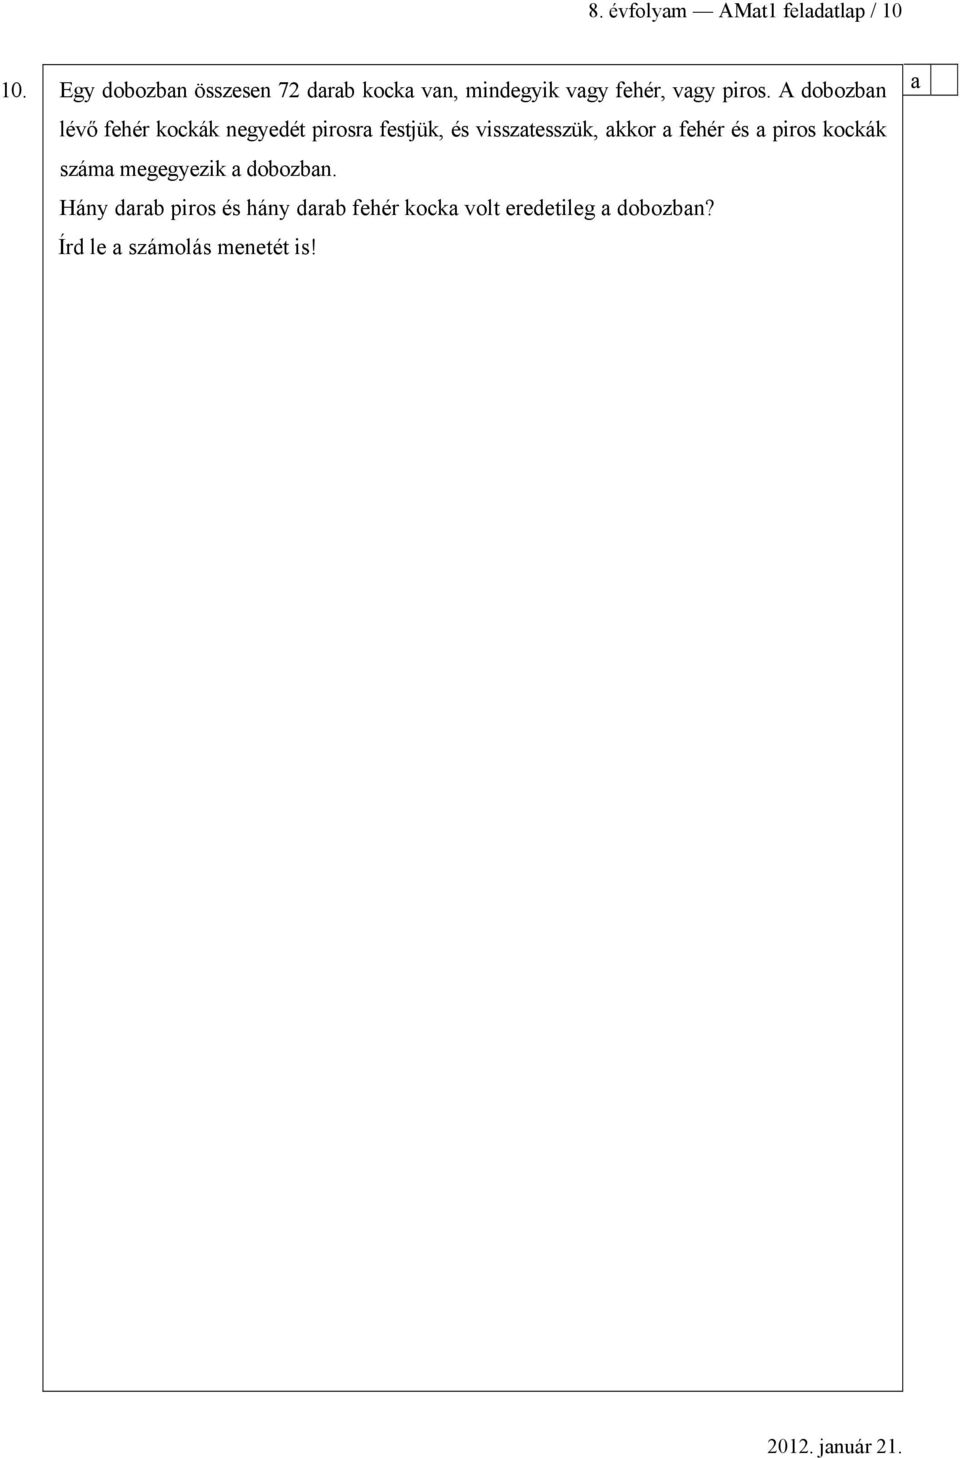 MATEMATIKA FELADATLAP a 8. évfolyamosok számára - PDF Ingyenes letöltés